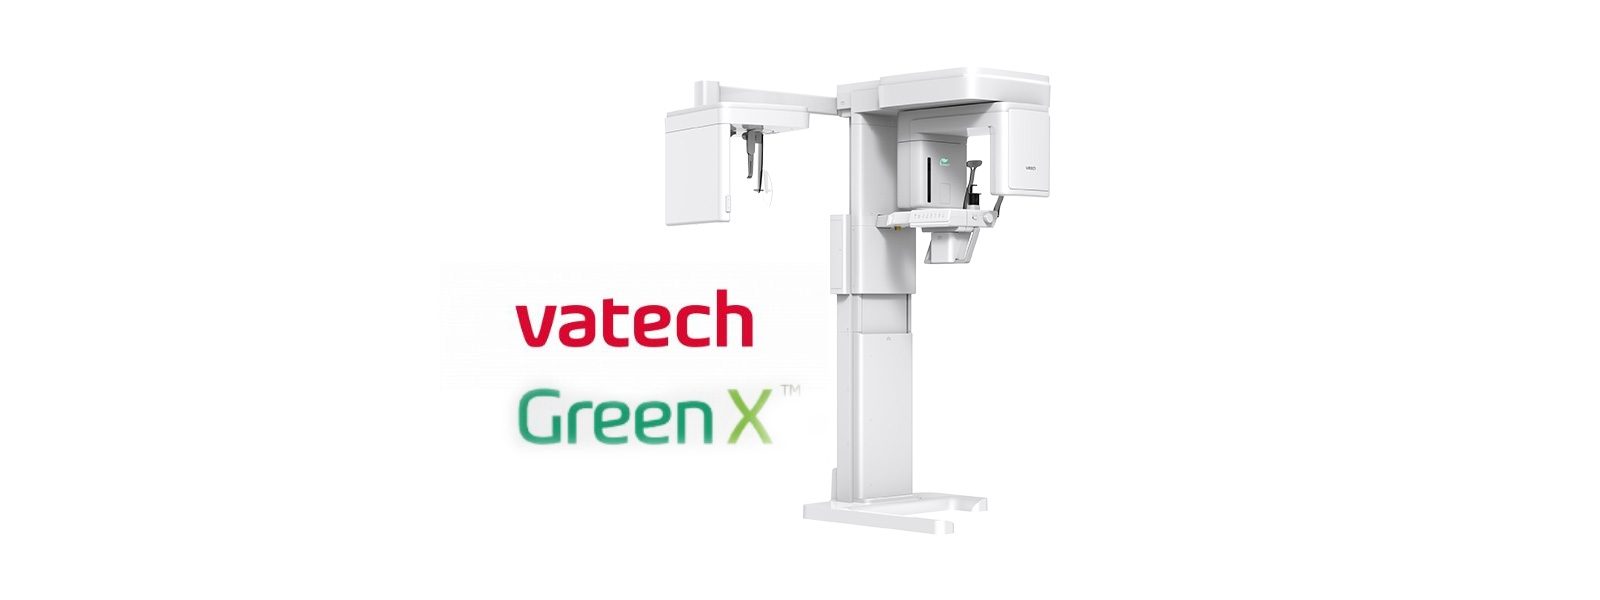 VaTech Green X